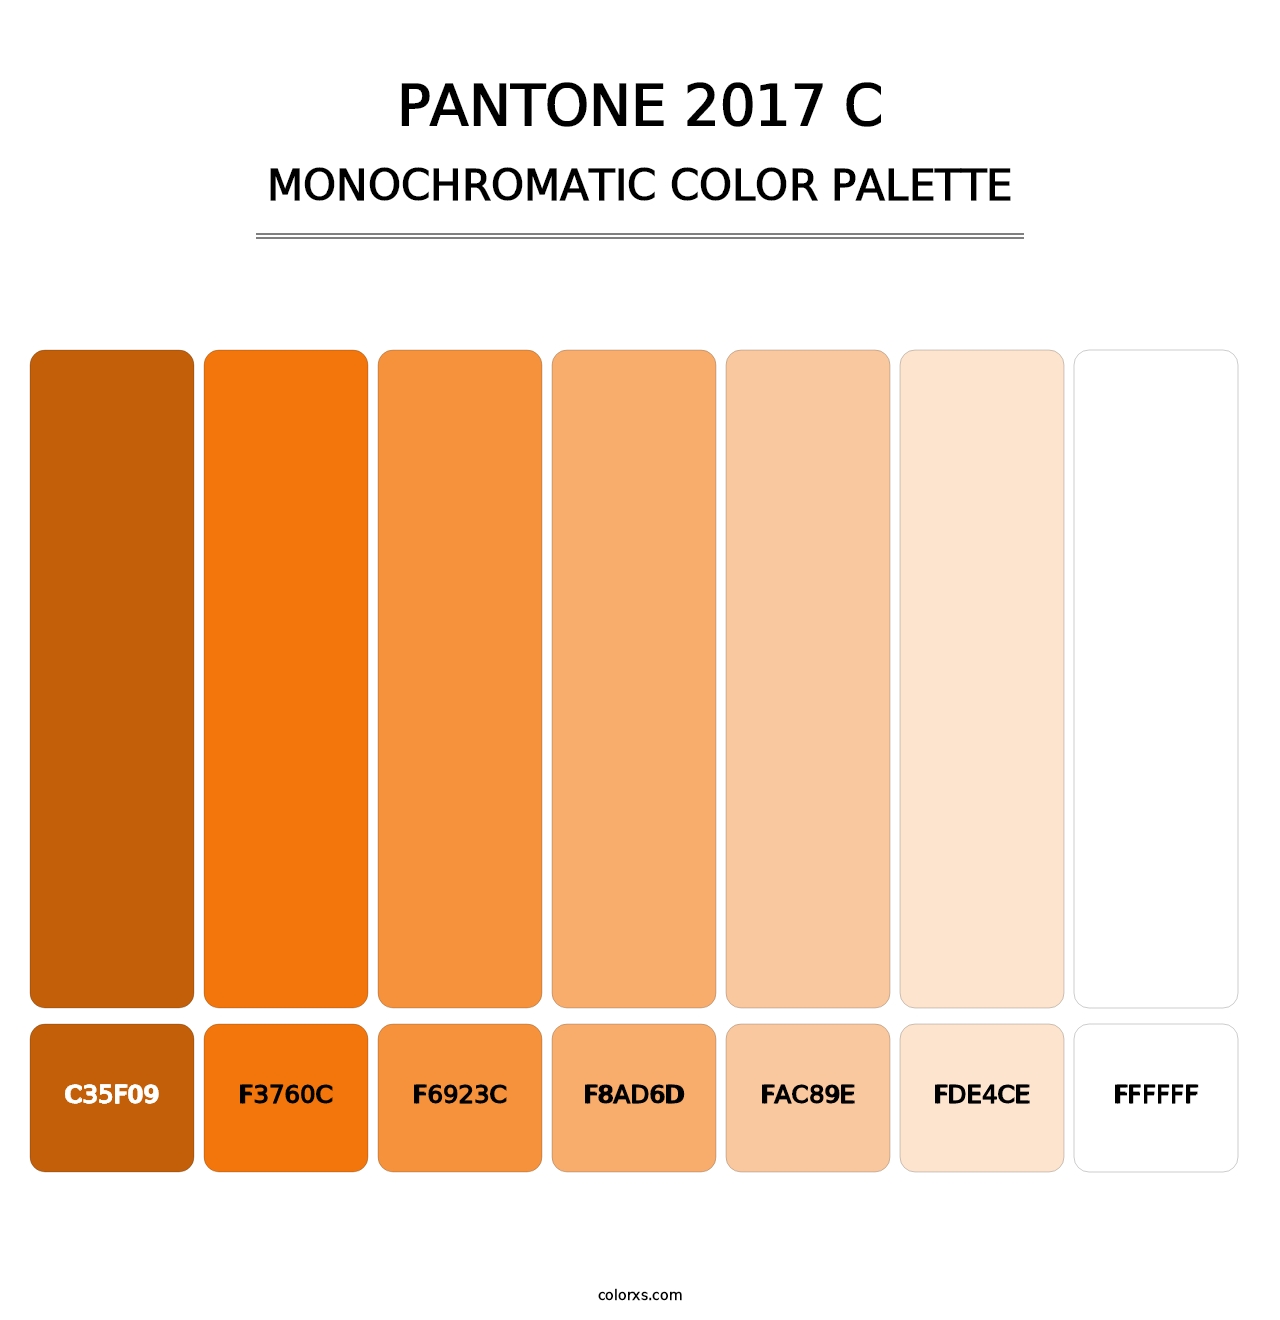 PANTONE 2017 C - Monochromatic Color Palette